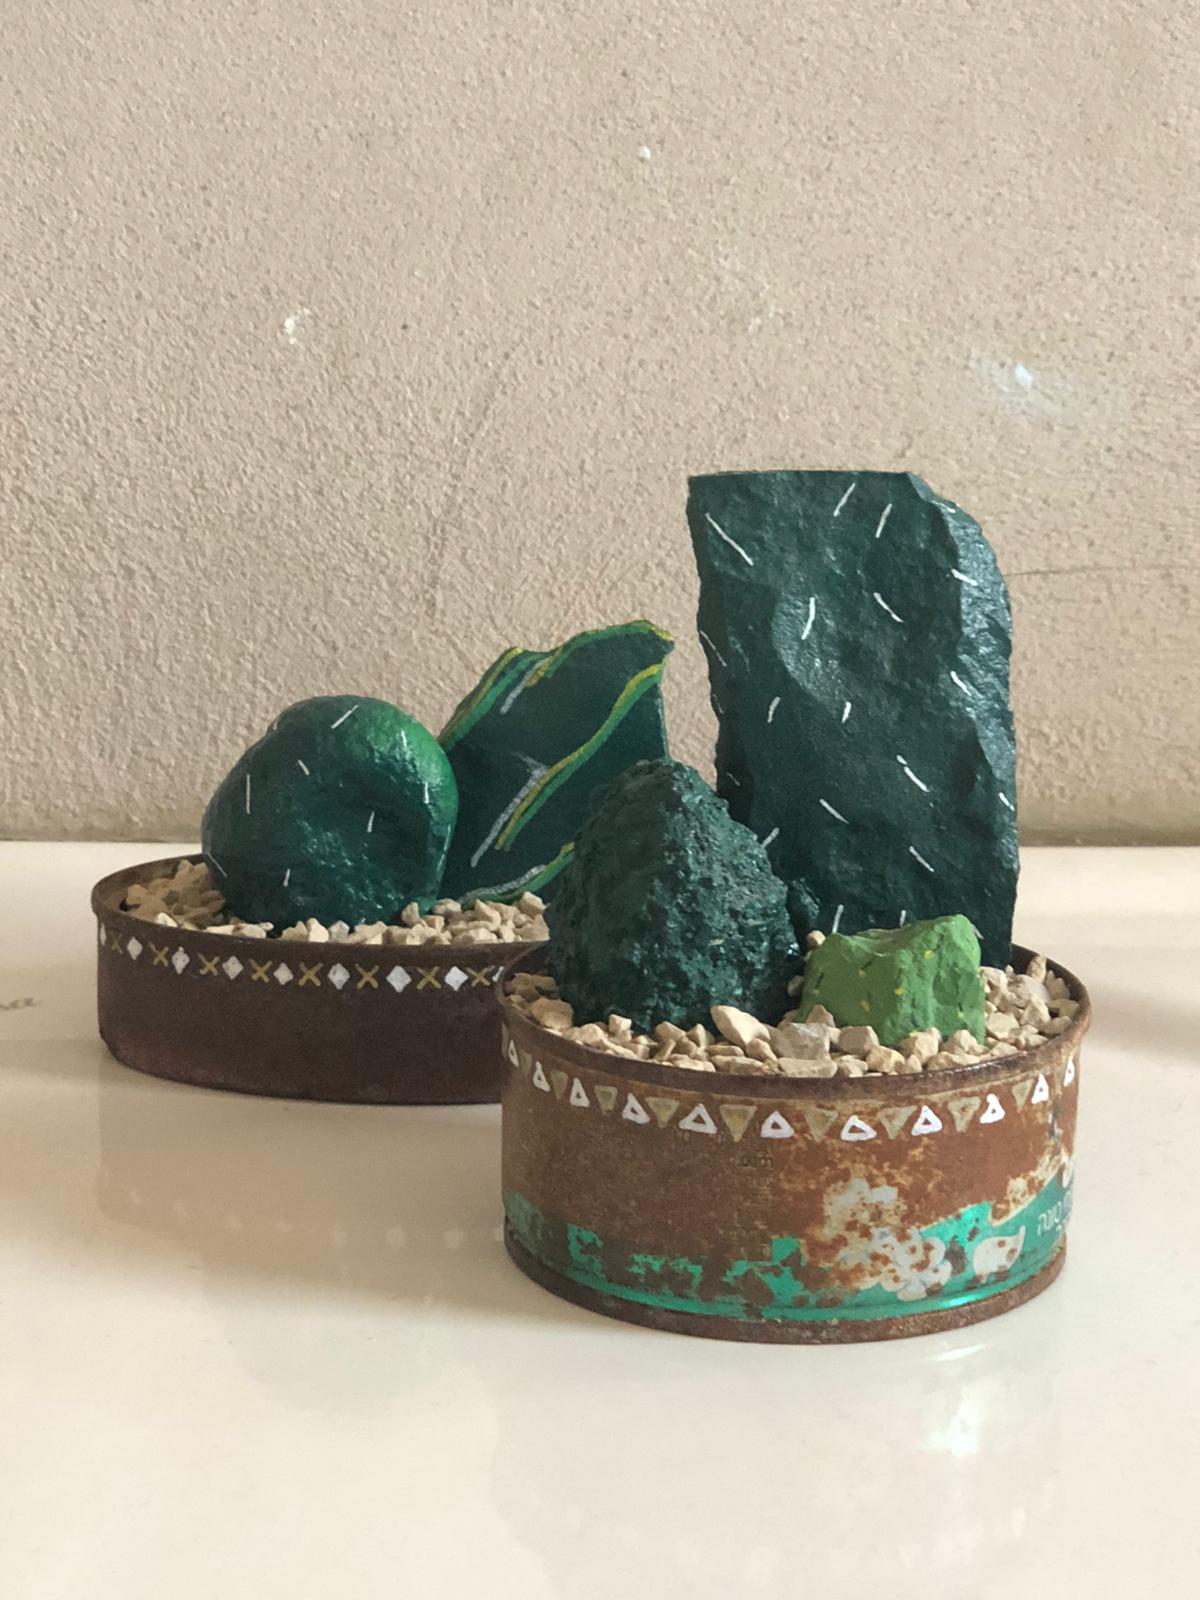 תמונה של אבנים צבועות ירוק בתוך קופסאות שימורים חלודות